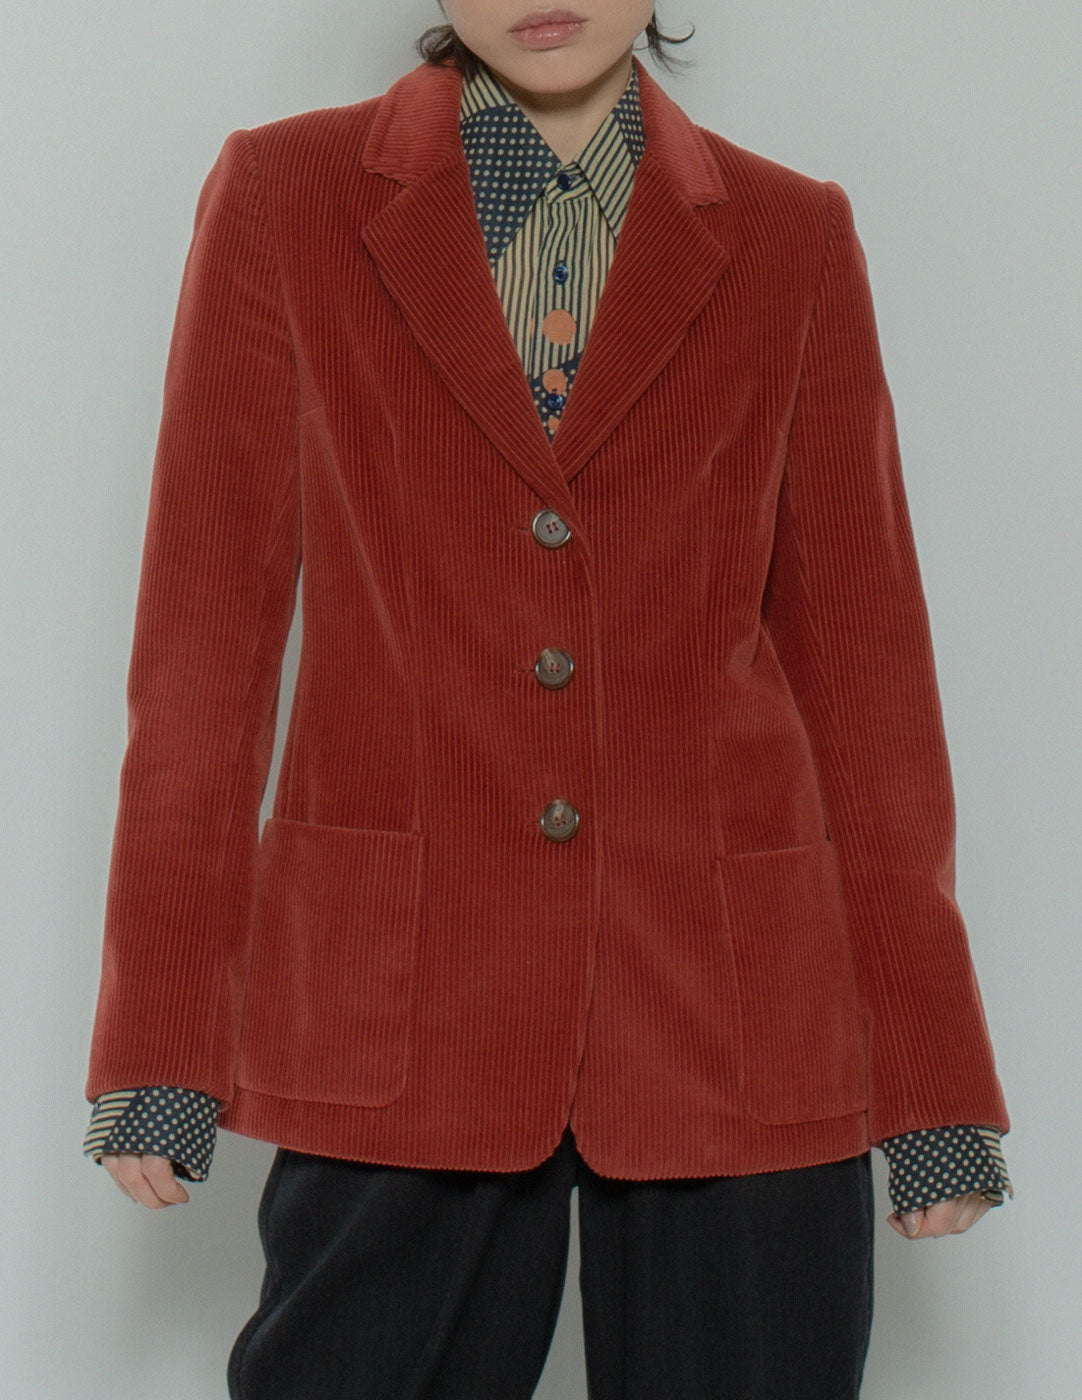 Bill Blass vintage brick red corduroy blazer front detail